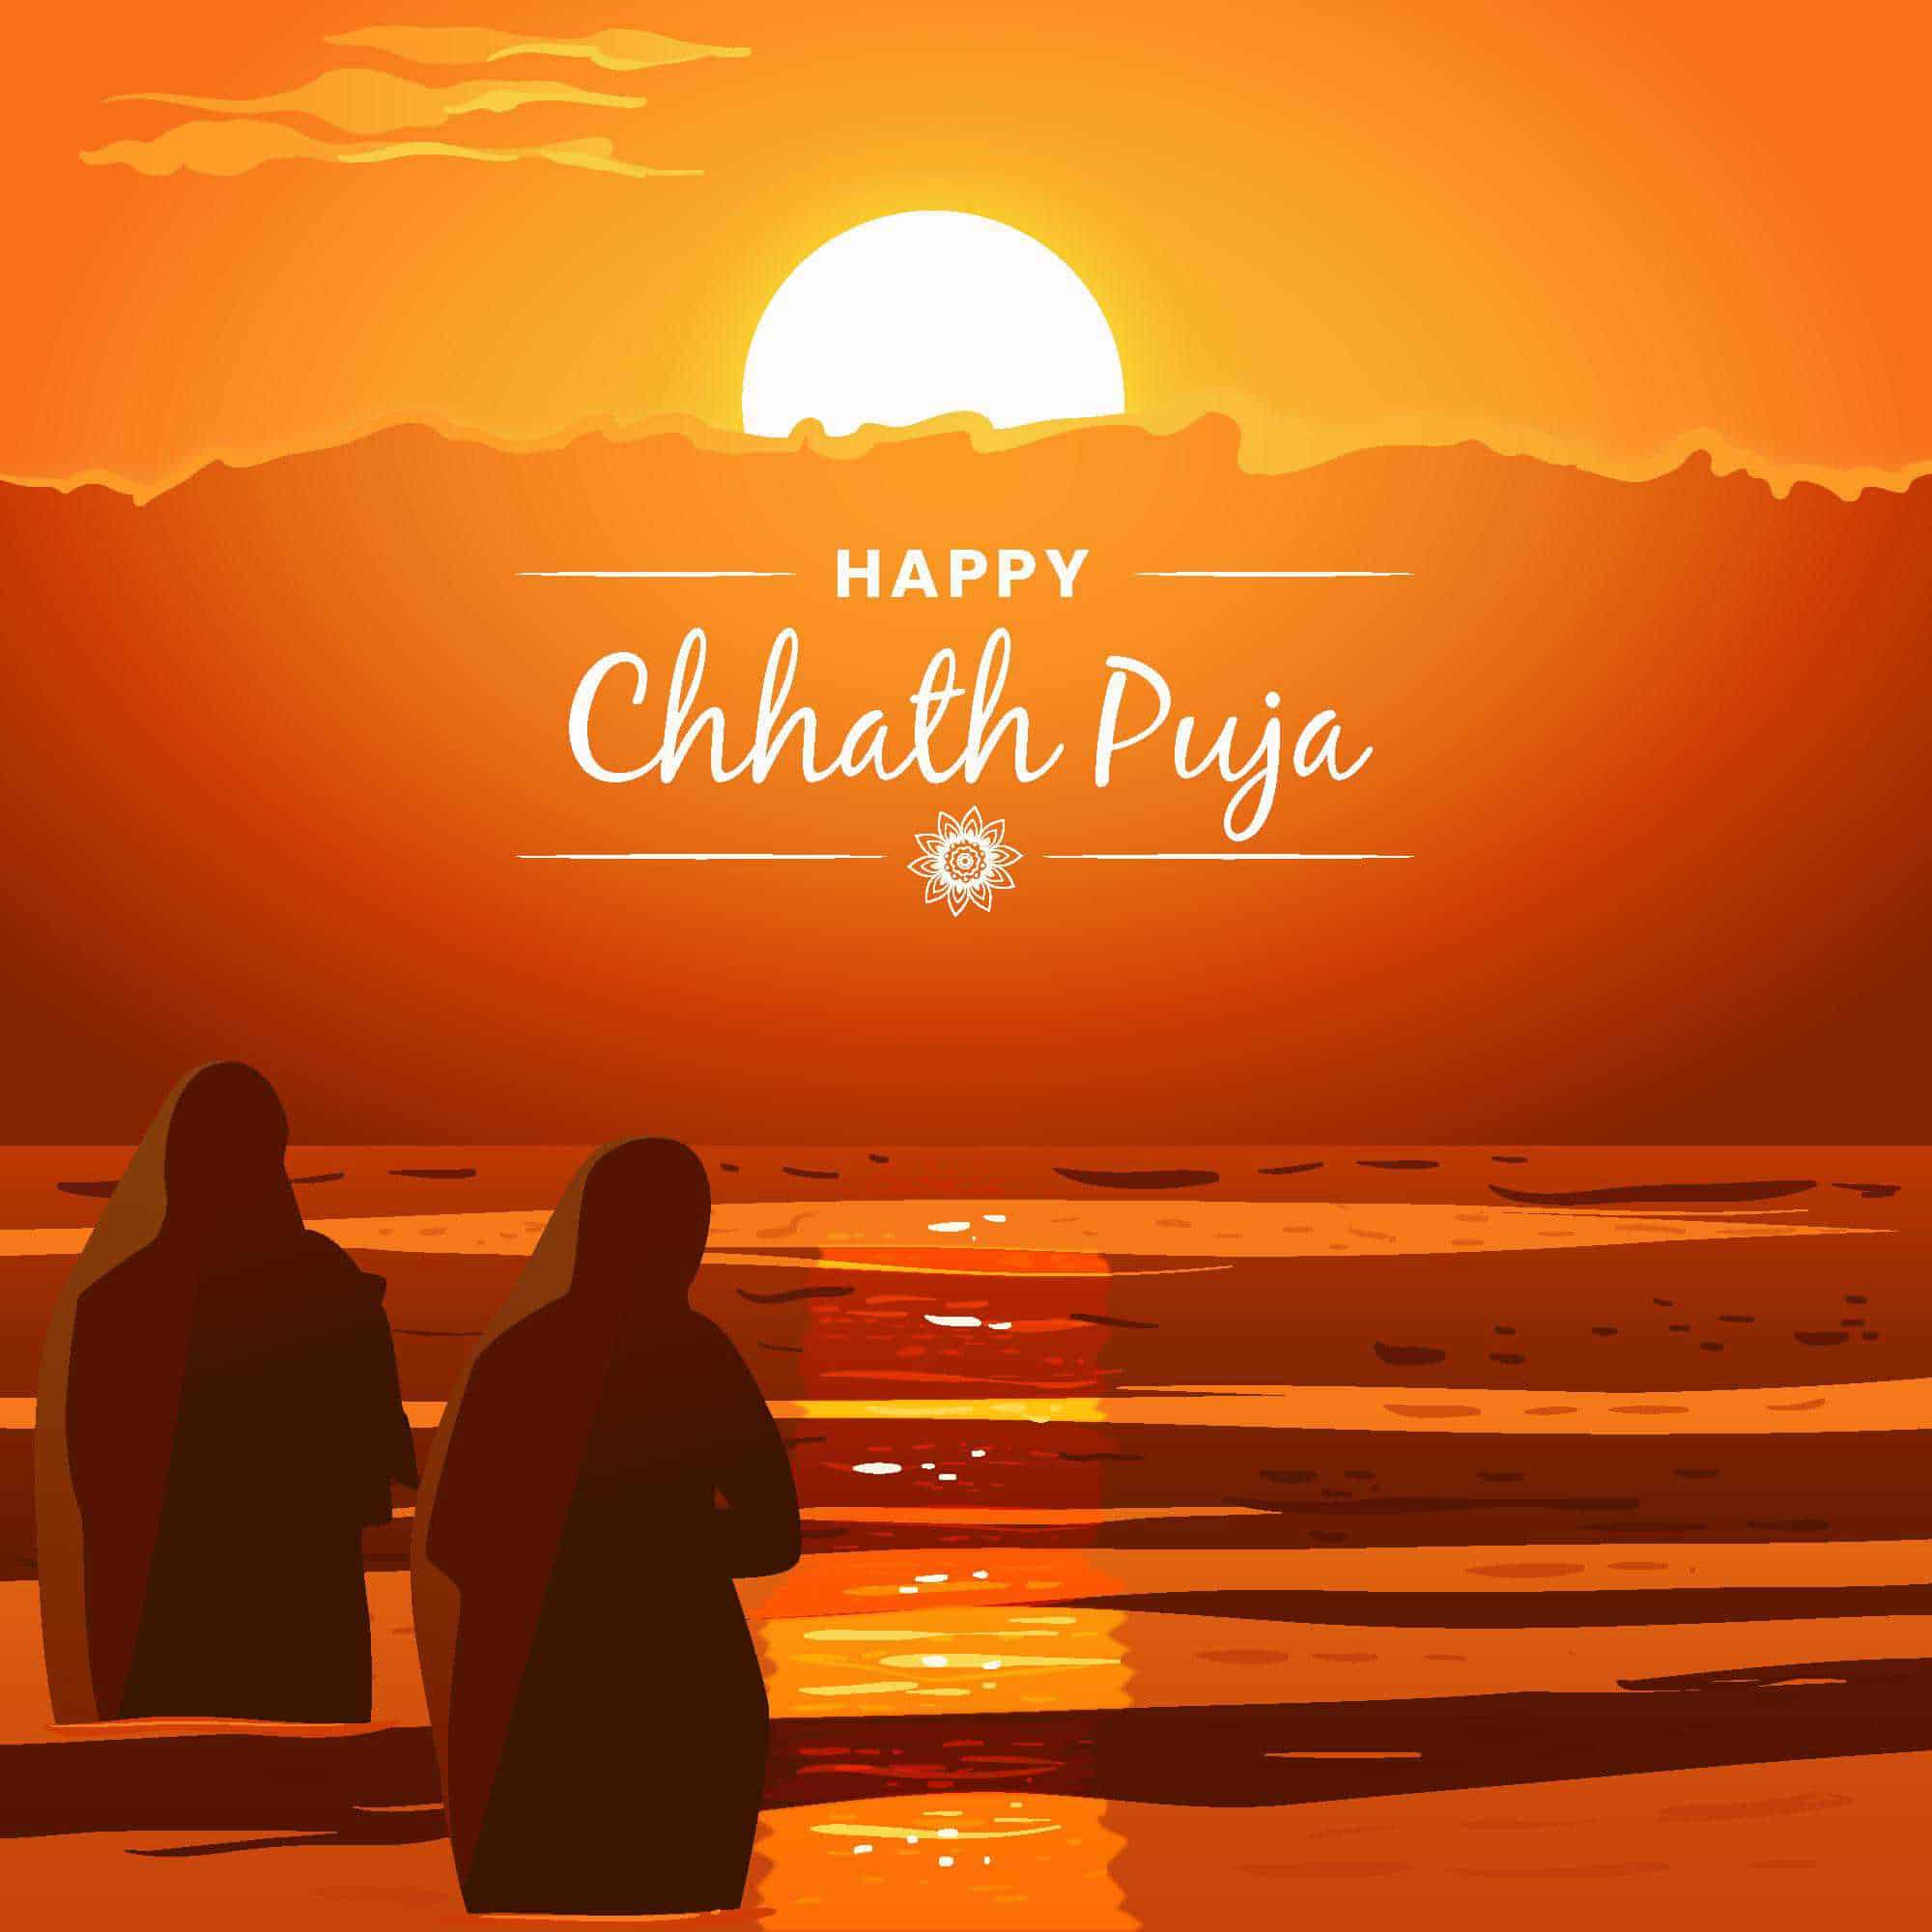 Chhath Puja Photos